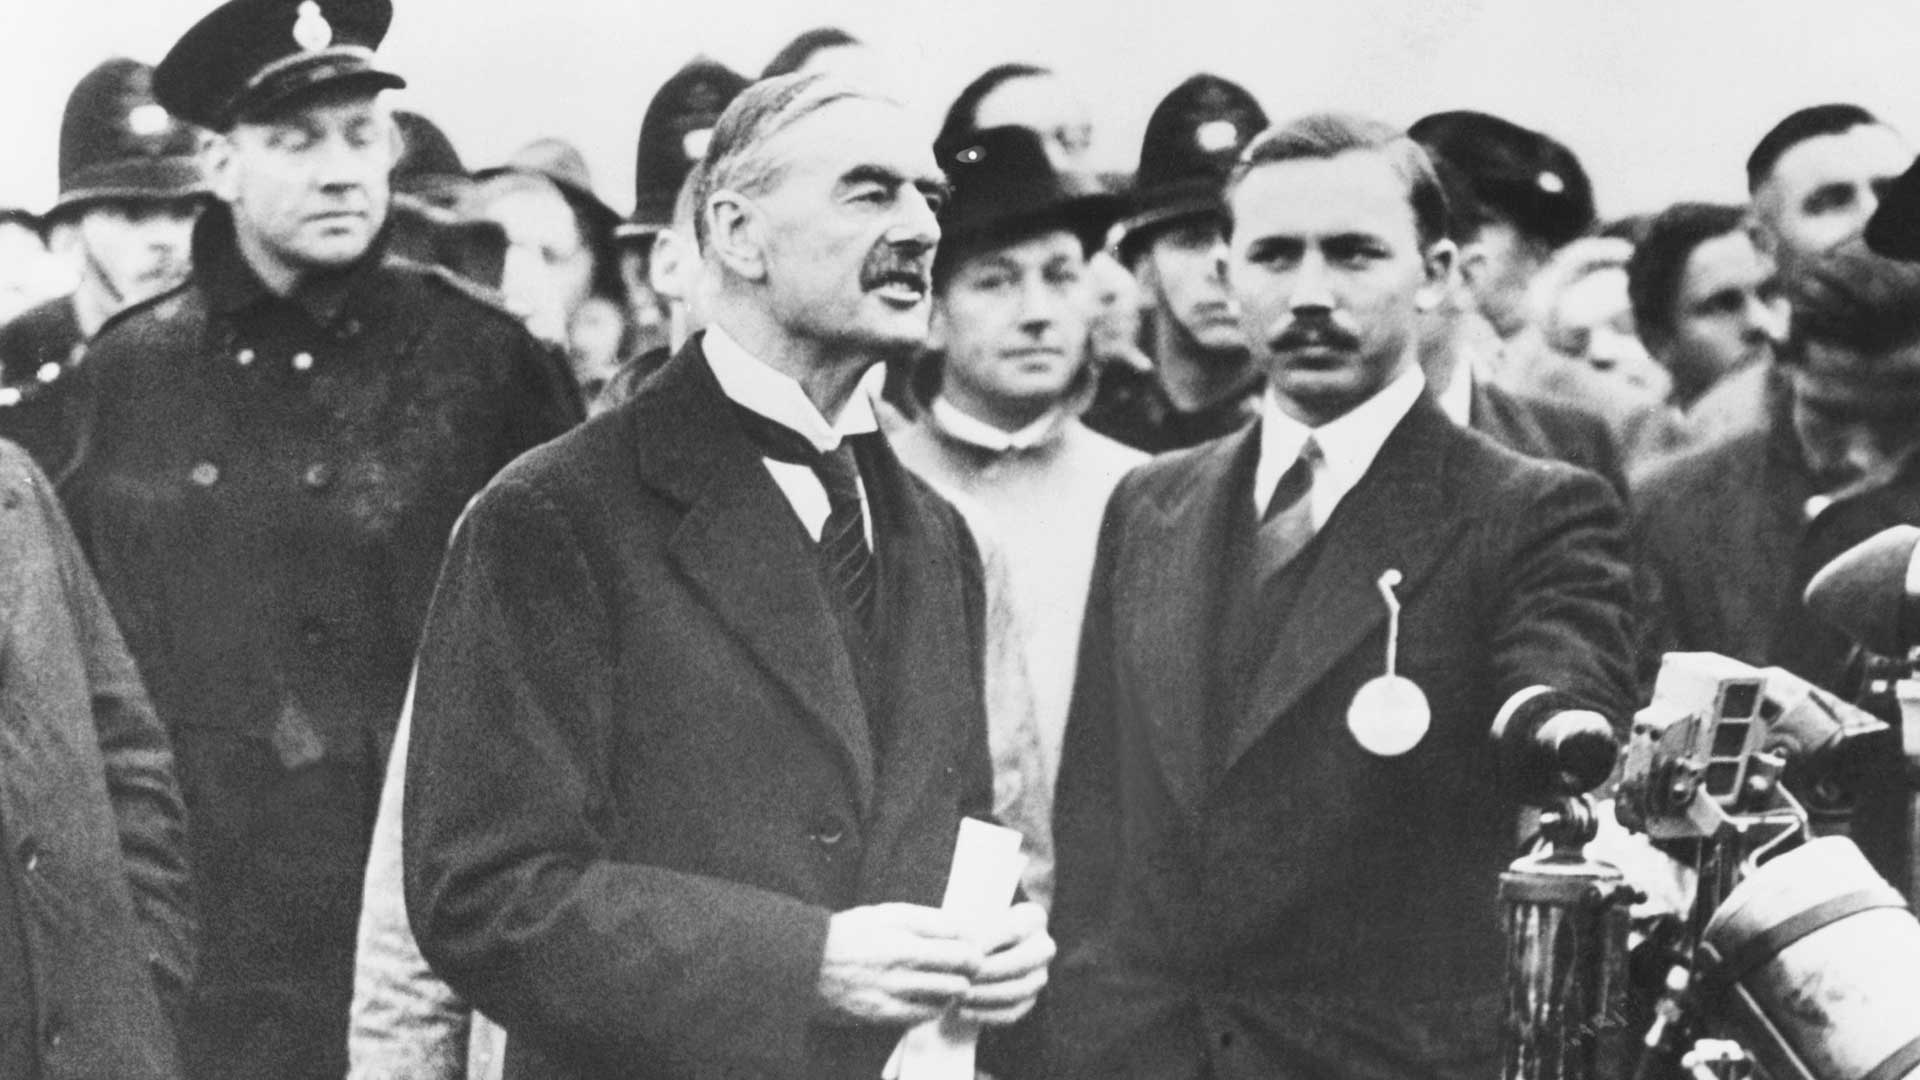 The UK's prime minister in 1939